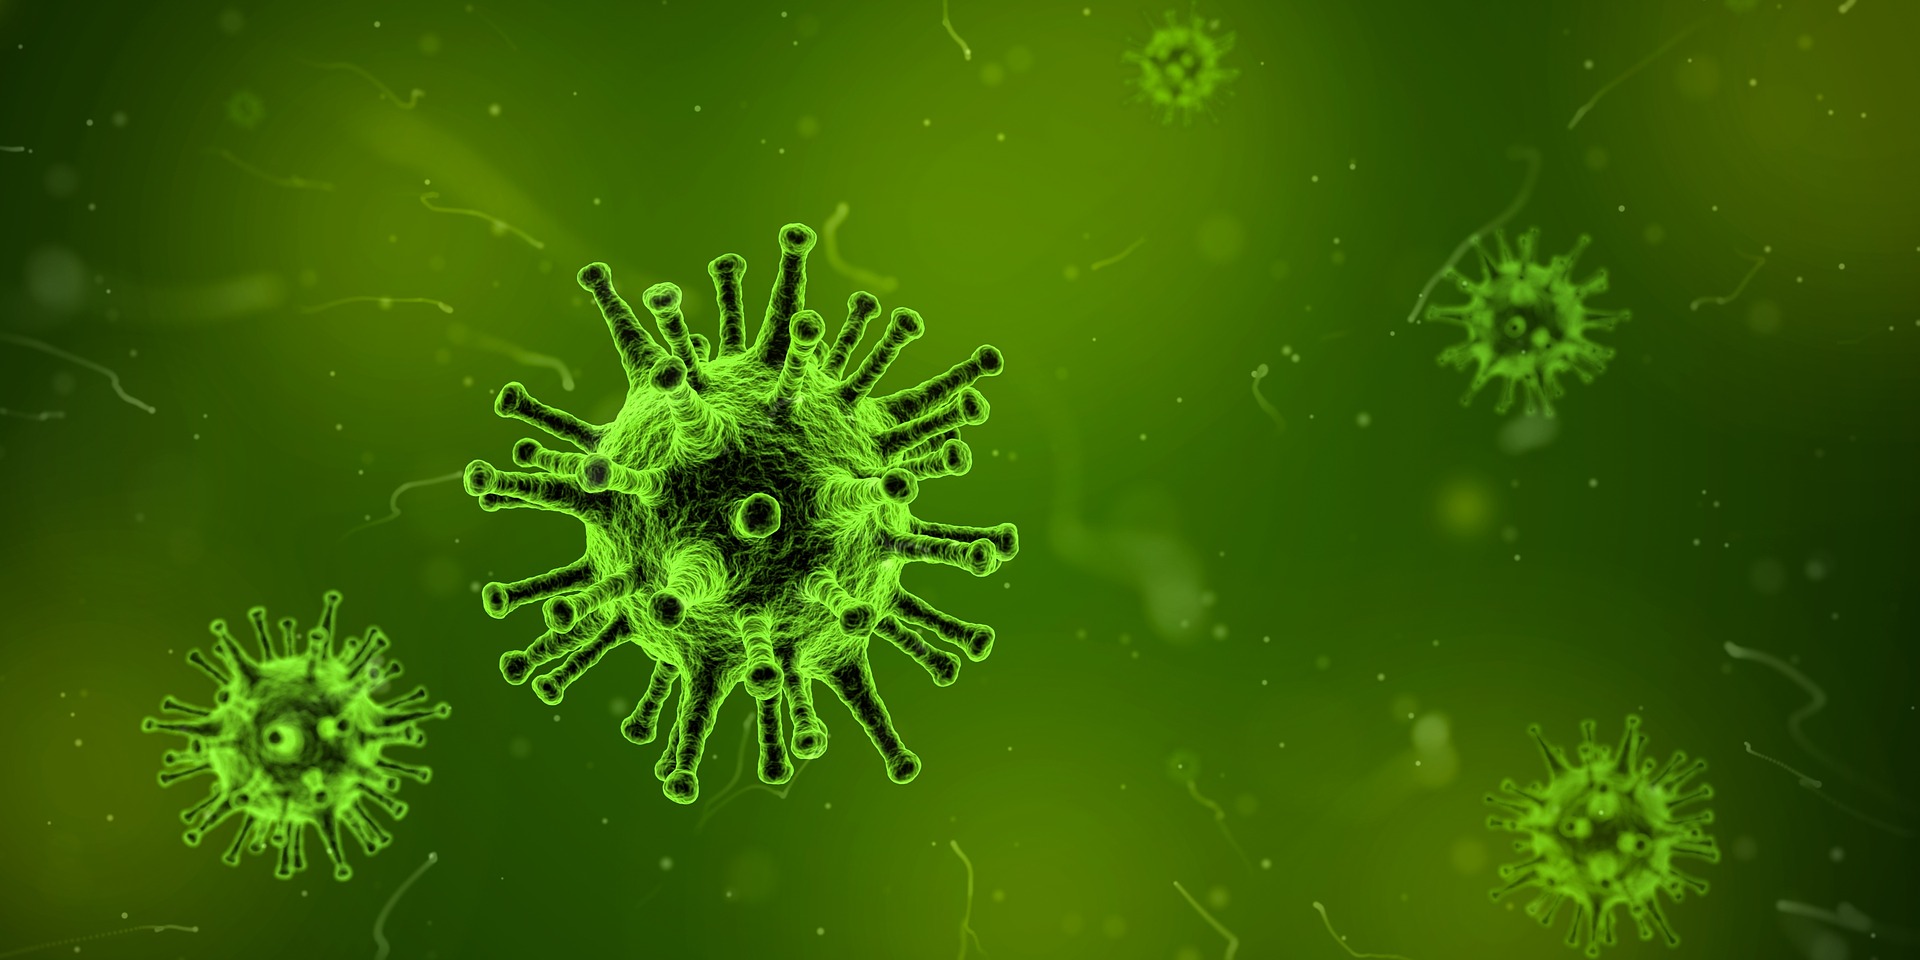 Foto ilustrativa de microscópico simulando uma infecção.